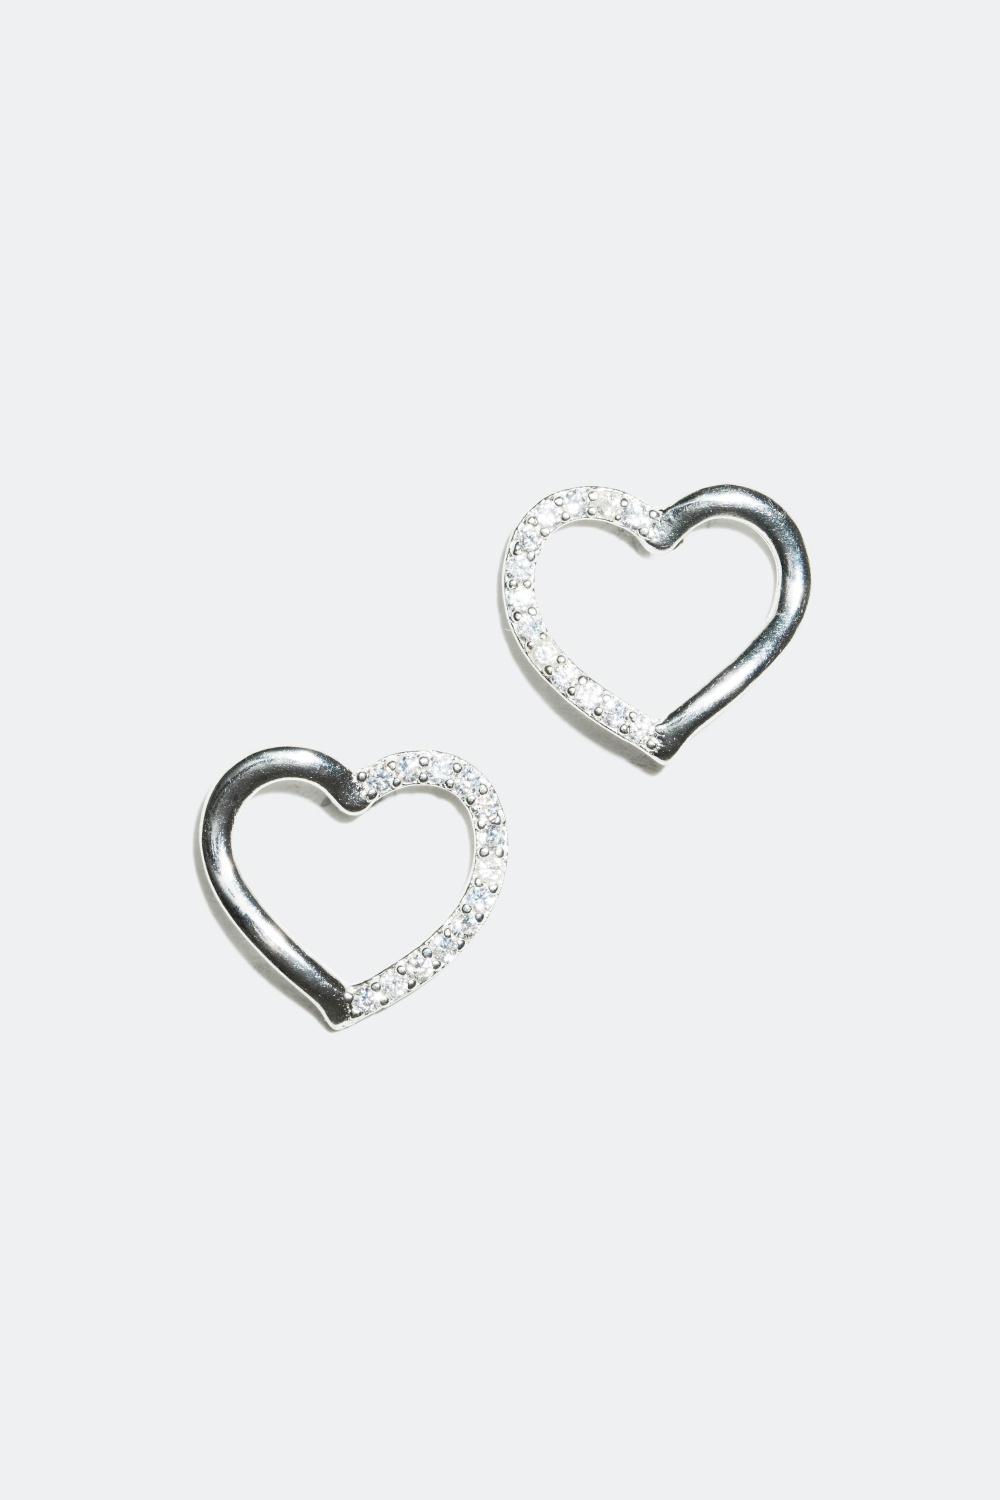 Silverörhängen, hjärtan dekorerade med cubic zirconia glasstenar i gruppen Äkta silver / Silverörhängen / Studs i äkta silver hos Glitter (322124)